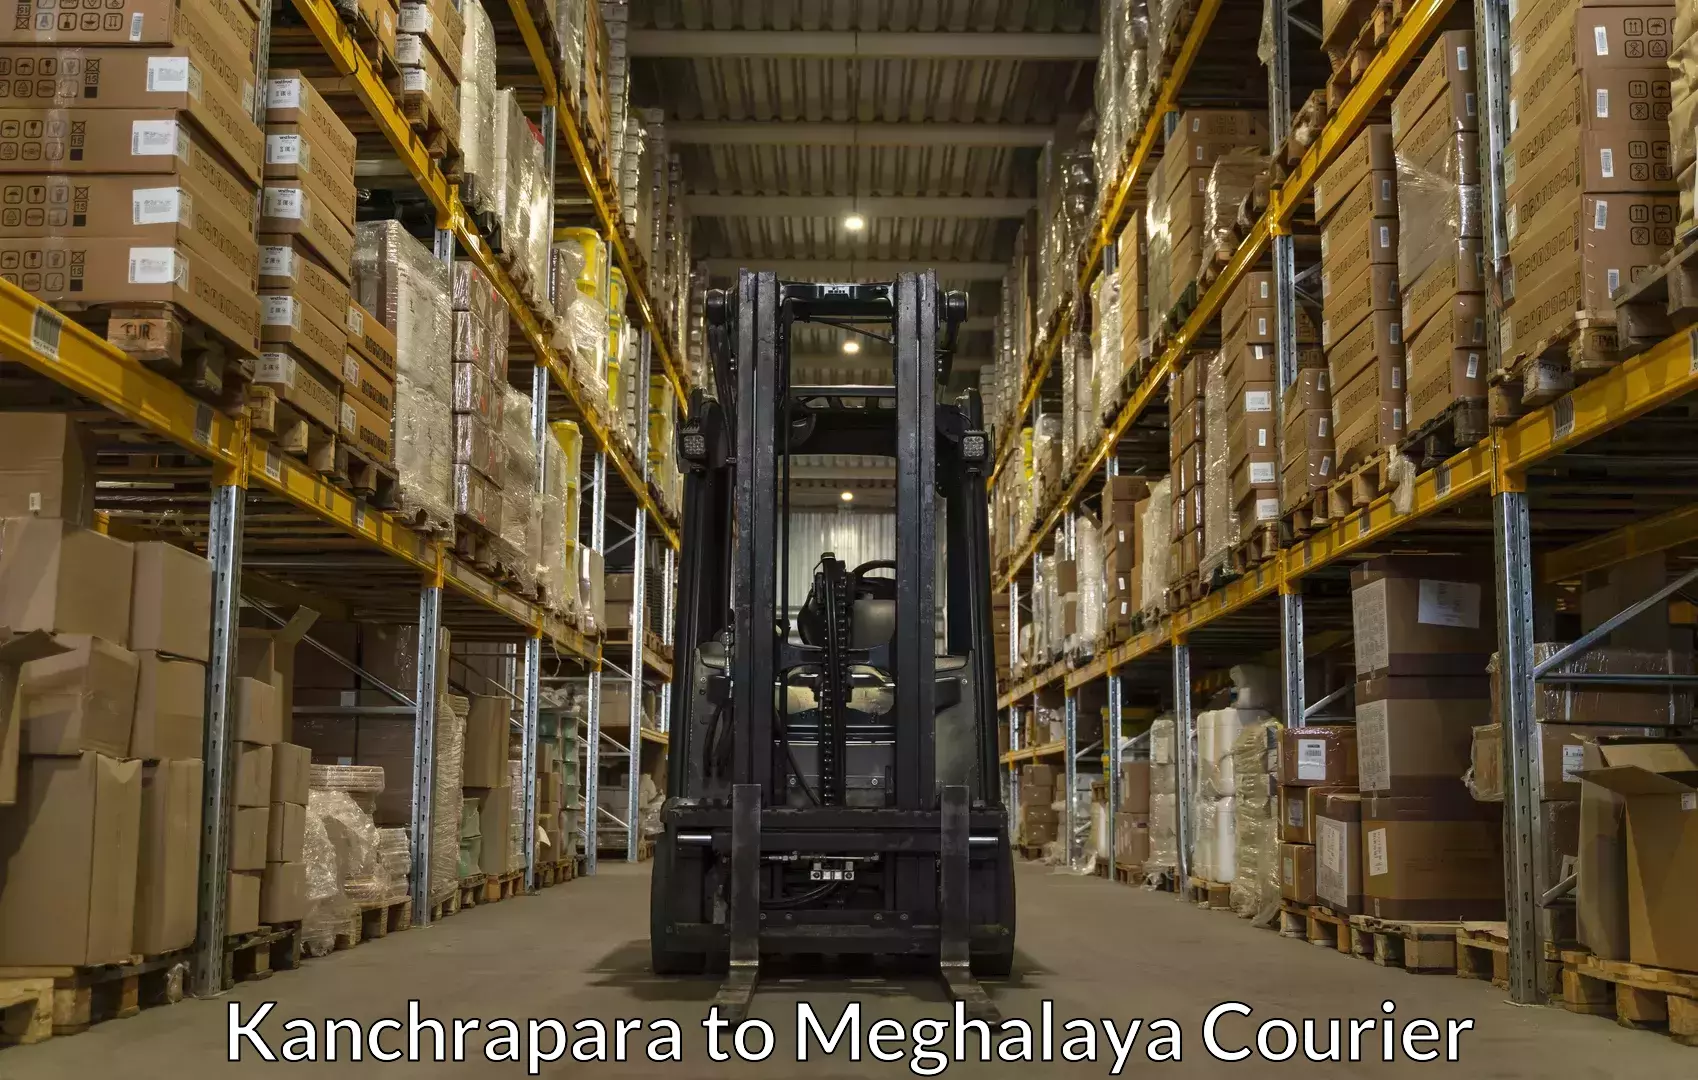 Baggage shipping service Kanchrapara to Dkhiah West